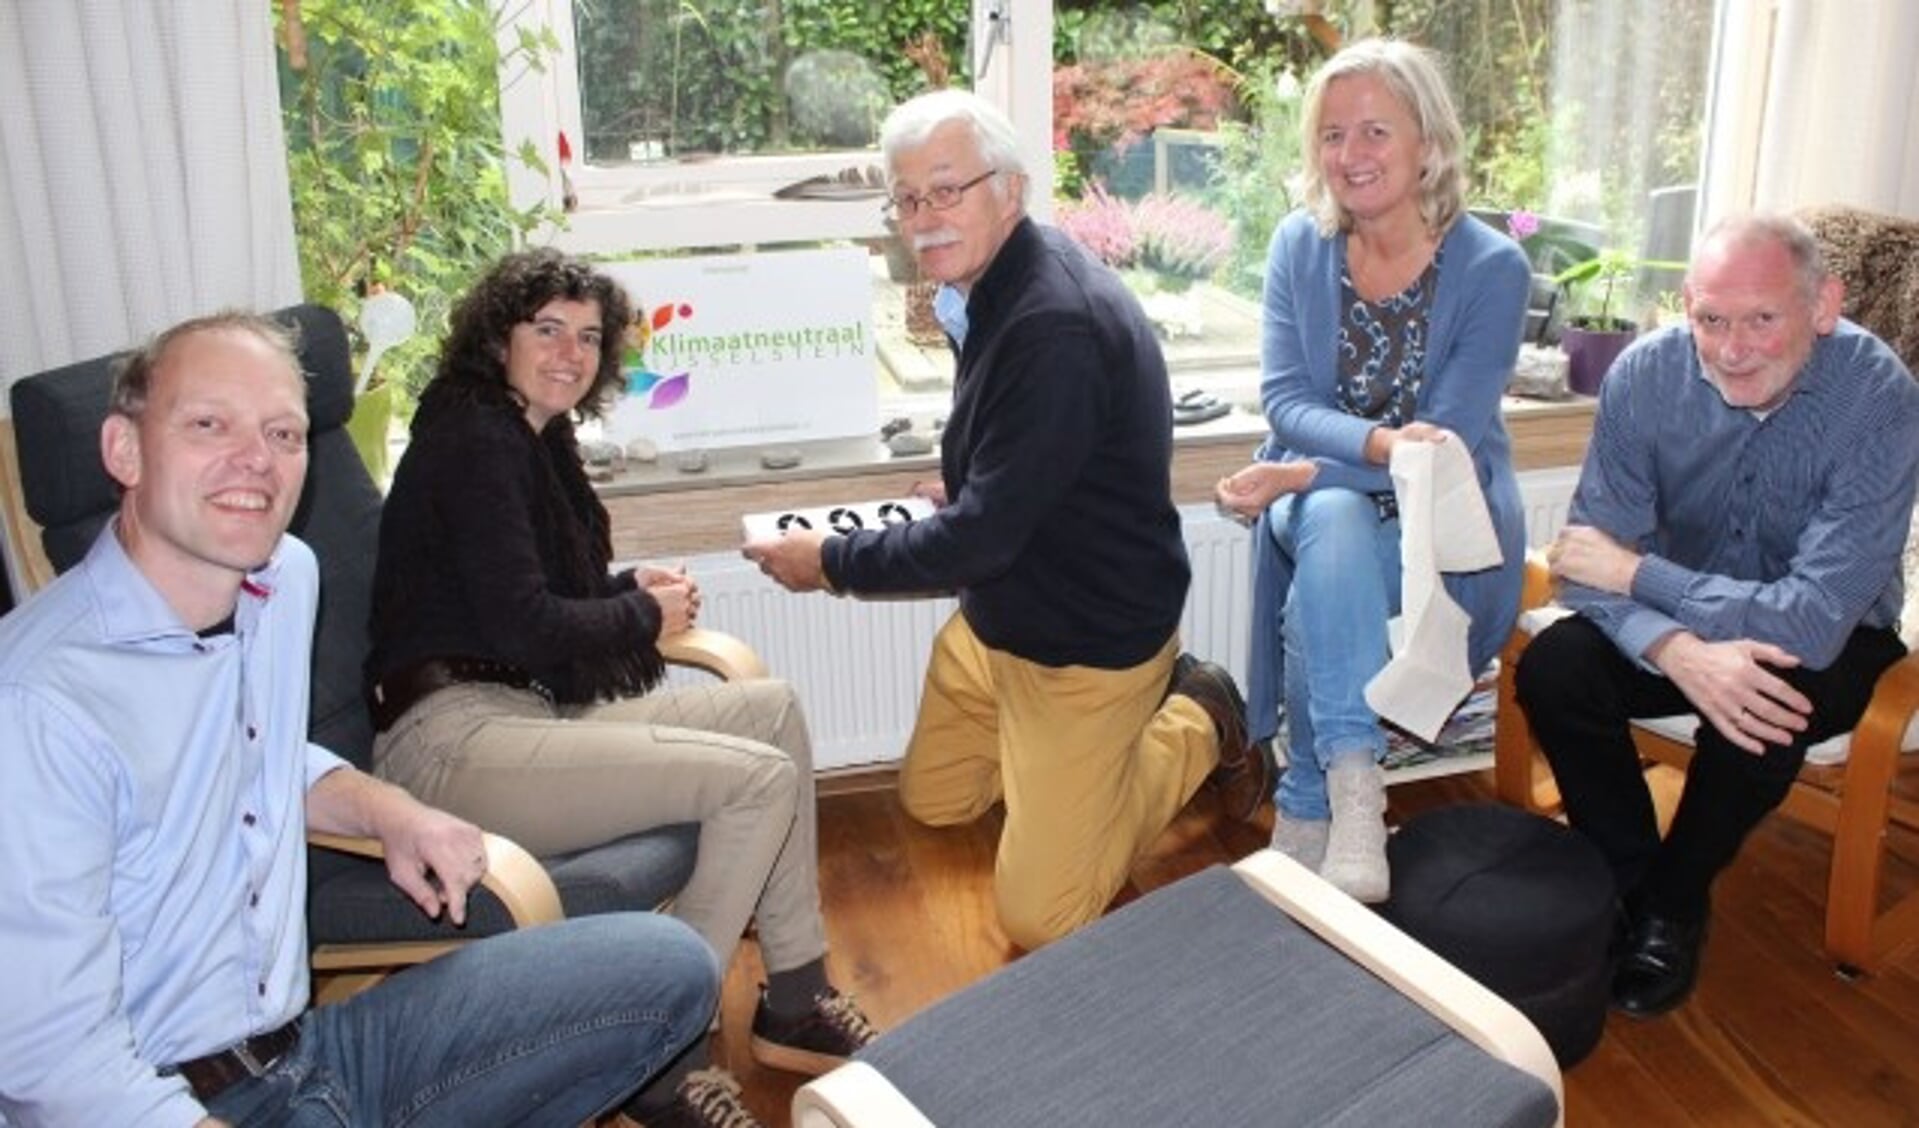 Rico Yntema, Ivon Vrolijk, Henk de Groot, Marie-José de Zeeuw en Henk Lindeman vormen samen de energieke en bruisende werkgroep Klimaatneutraal IJsselstein. (Foto: Lysette Verwegen)